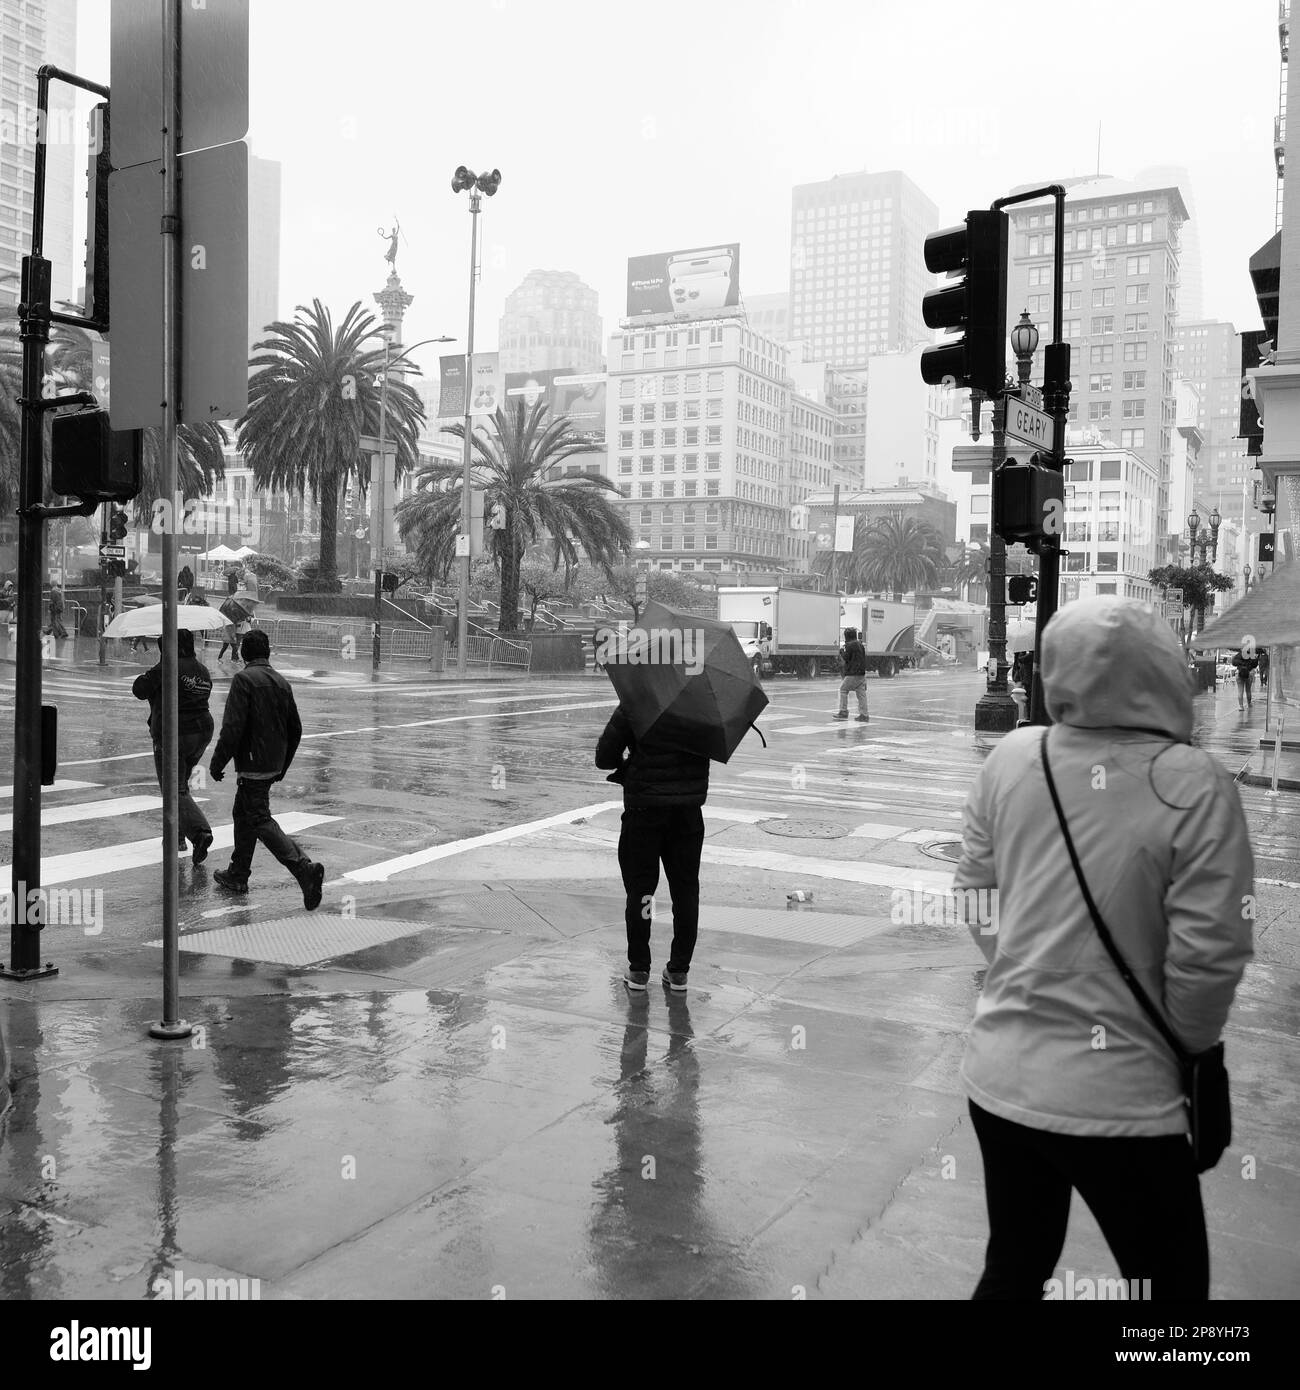 Pedoni e turisti sotto la pioggia nel centro di San Francisco, California; persone in condizioni di pioggia e tempo umido in visita sul marciapiede e strada Foto Stock